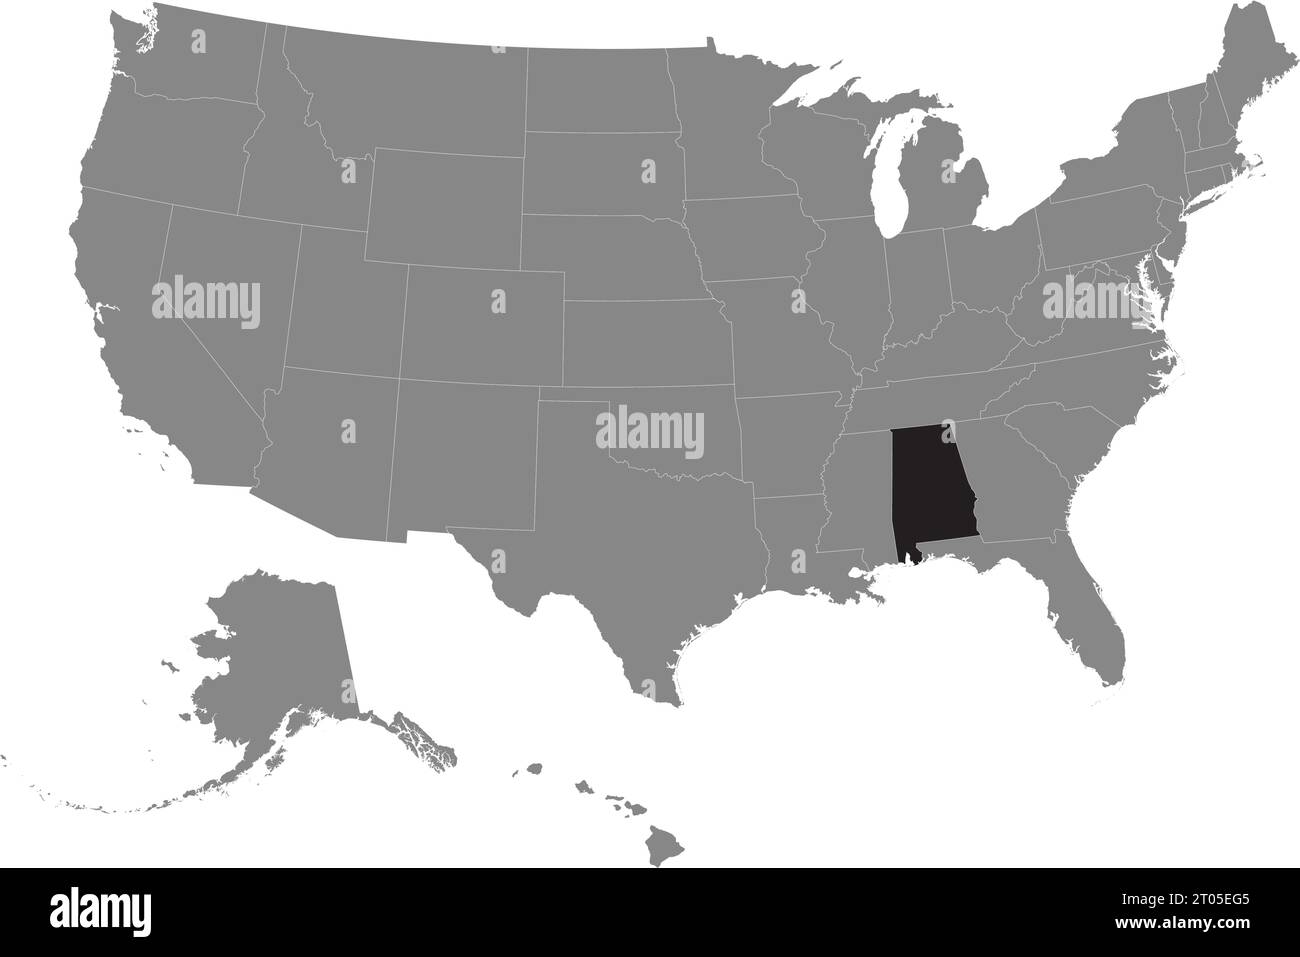 Carte fédérale CMJN noire de l'ALABAMA à l'intérieur de la carte politique blanche grise détaillée des États-Unis d'Amérique sur fond transparent Illustration de Vecteur